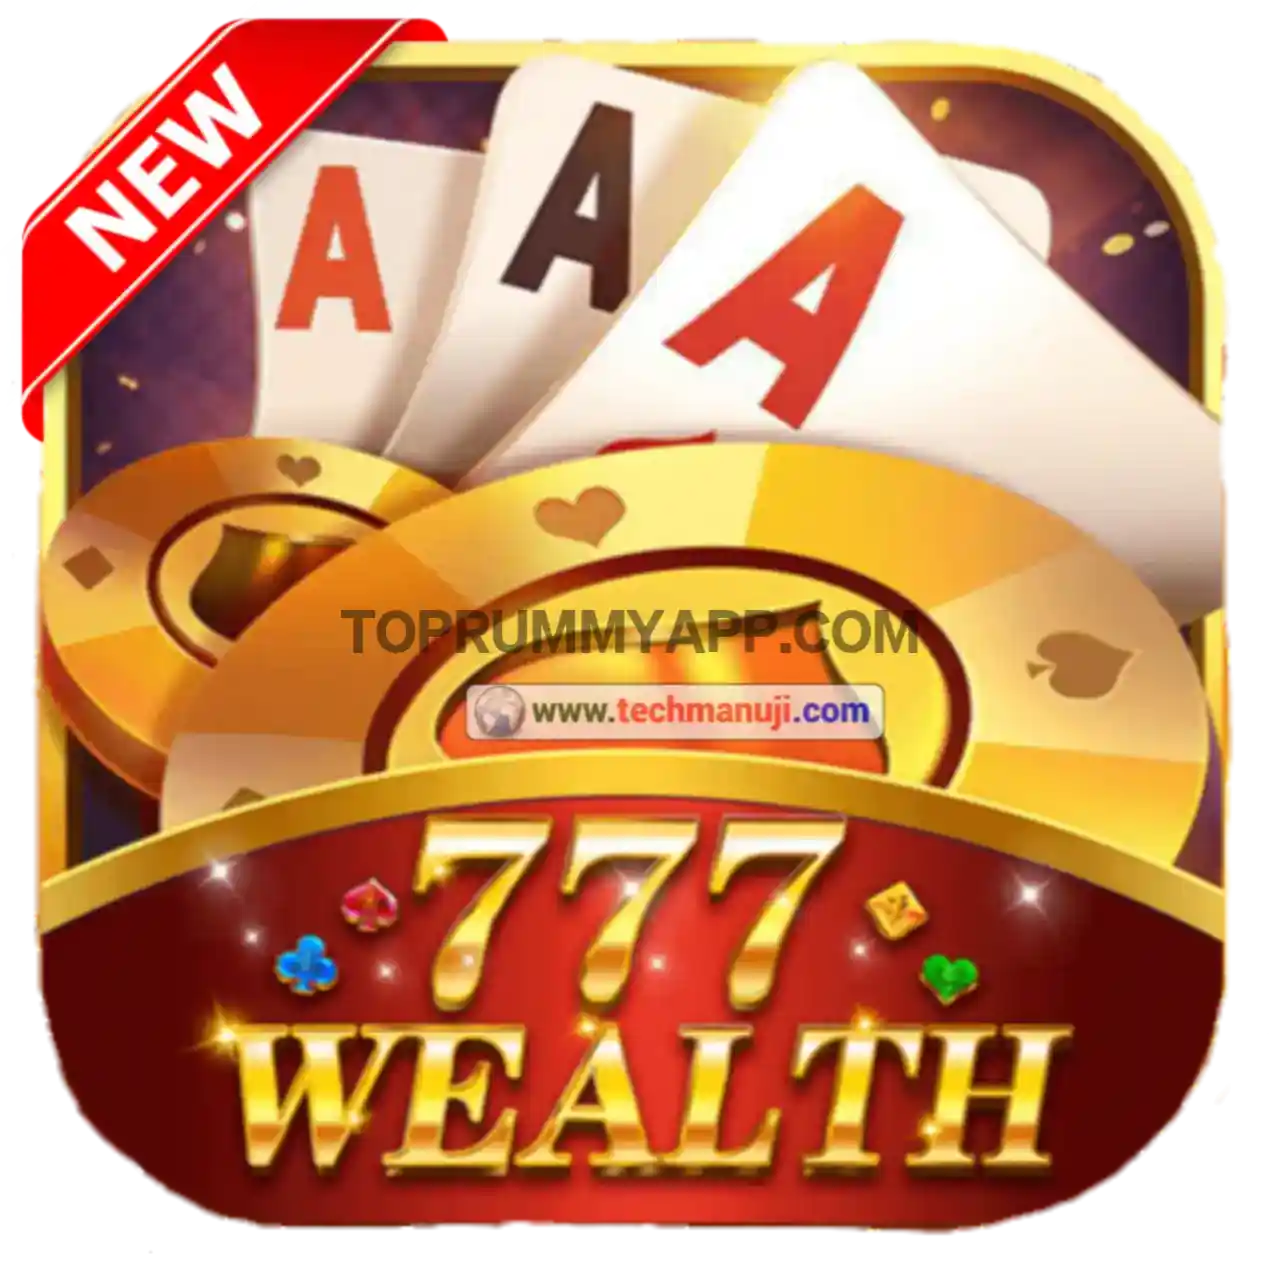 777 Wealth Rummy App Download